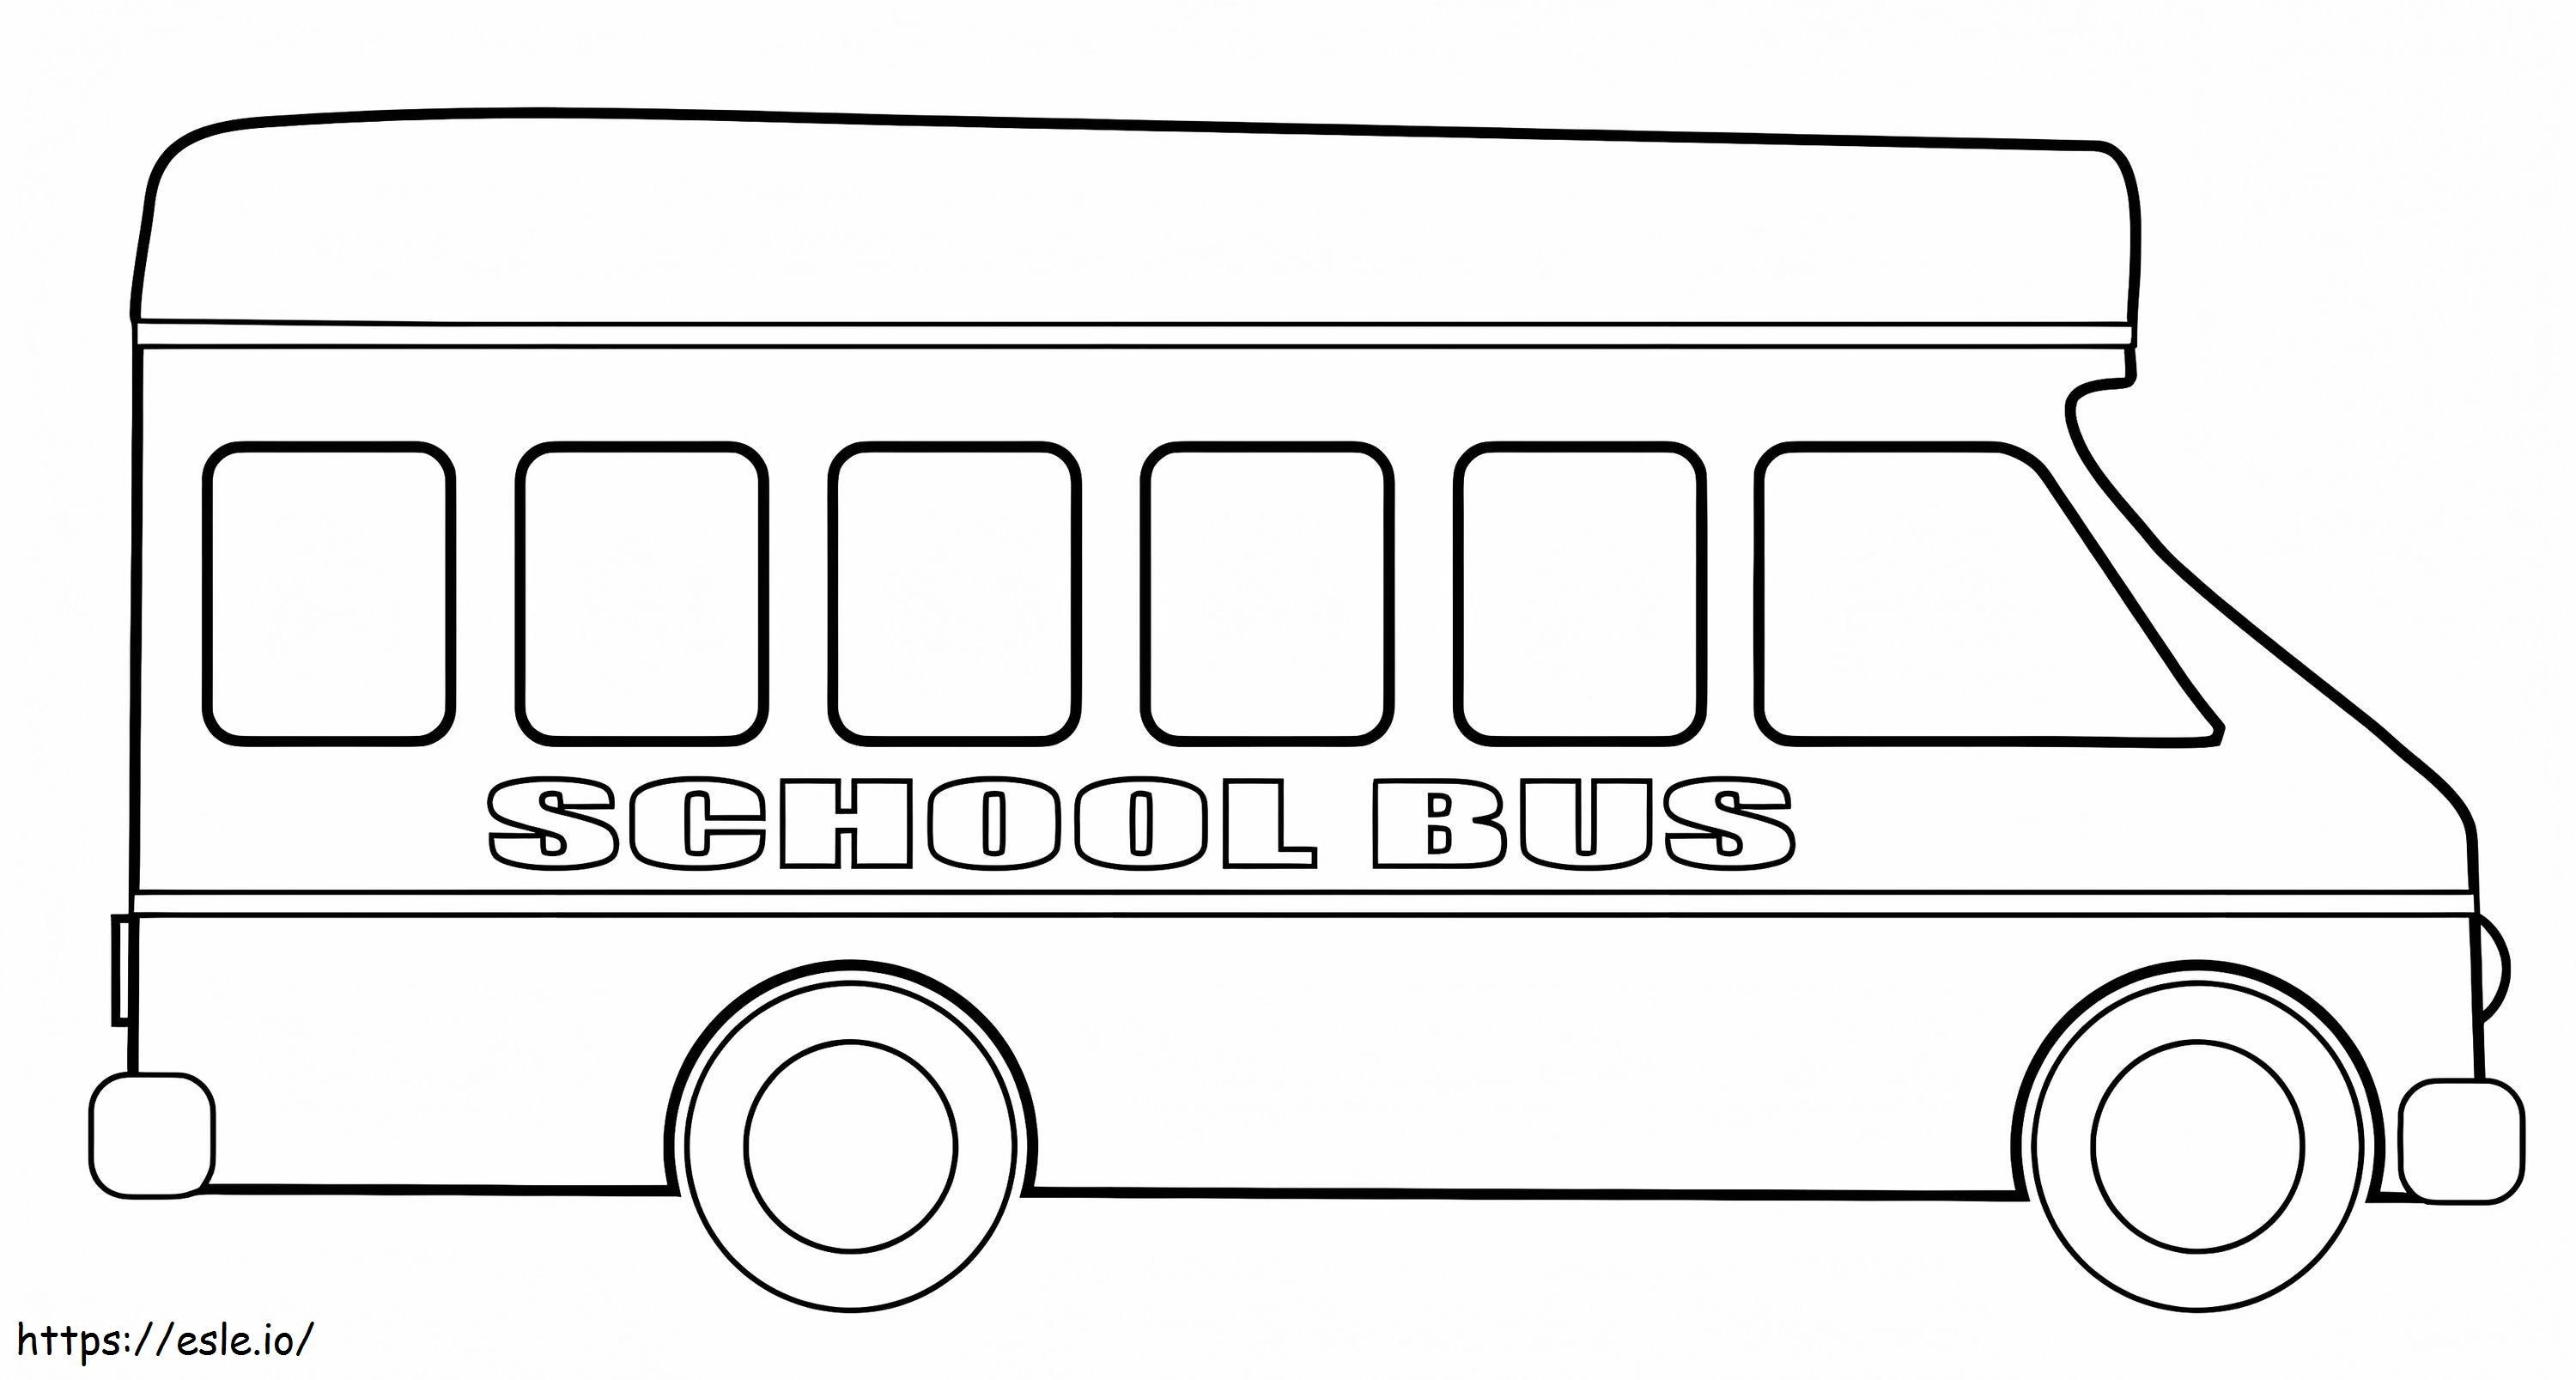 Simple School Bus 1 coloring page